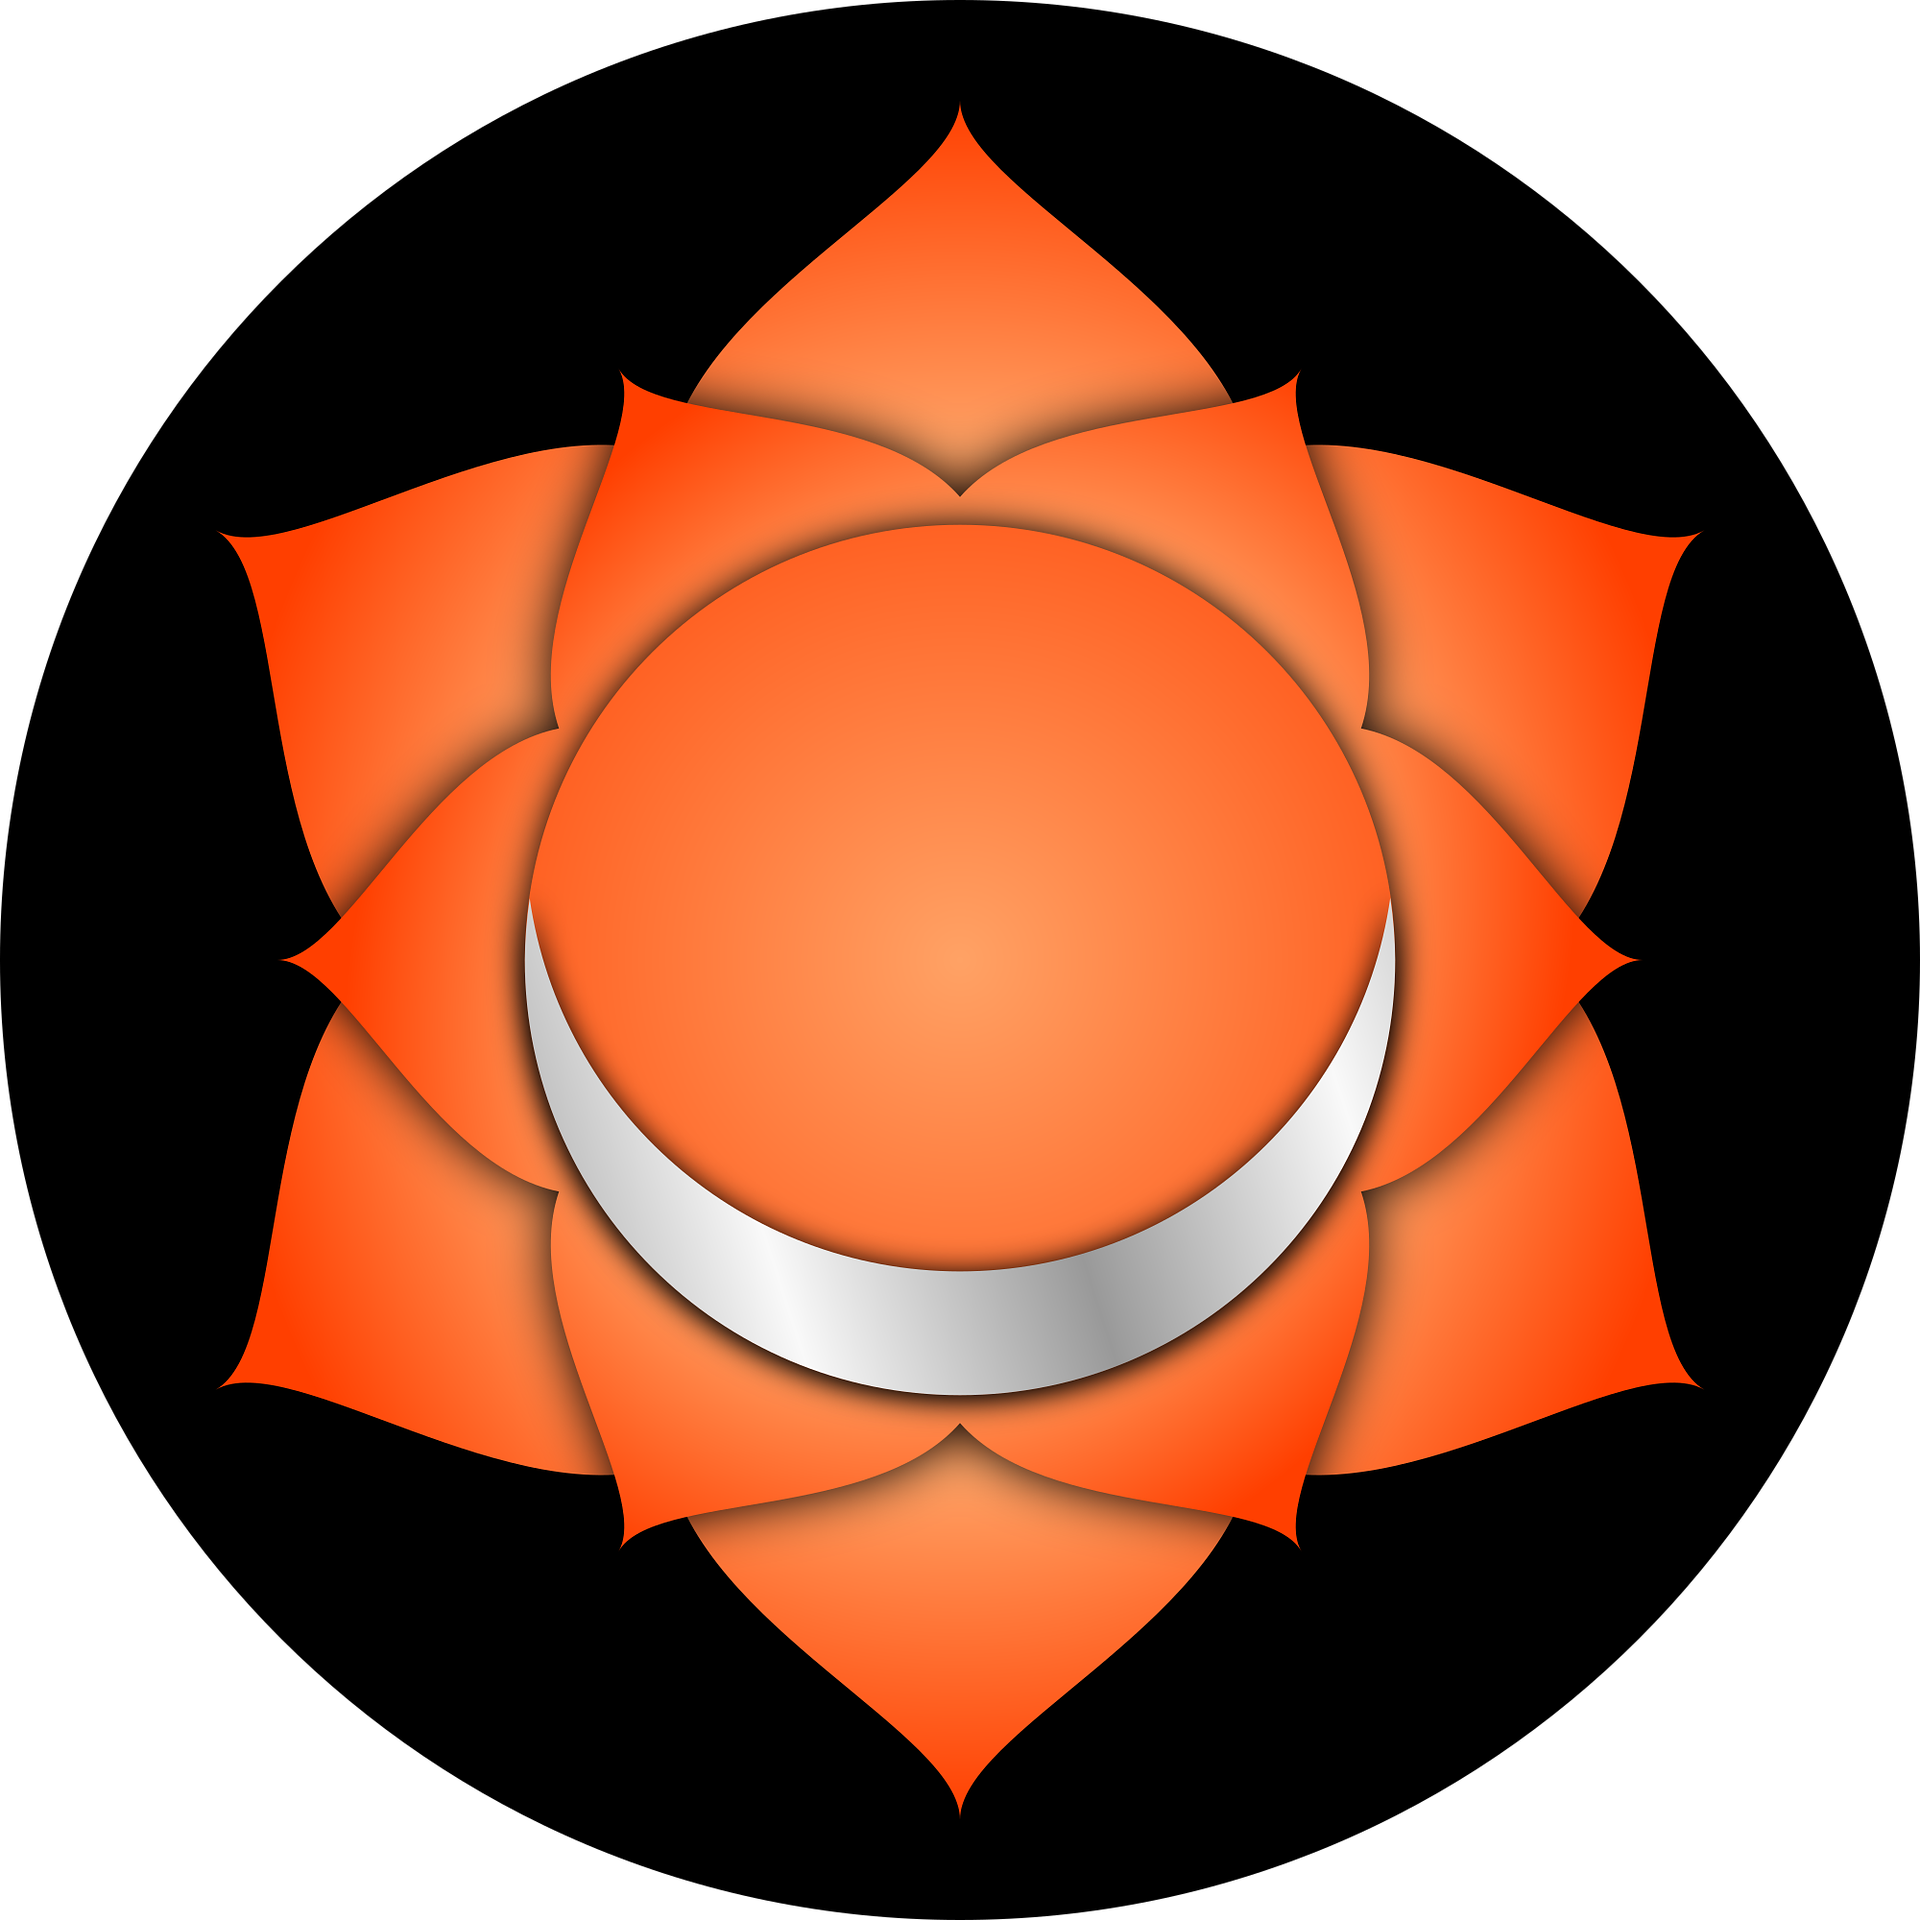 Il secondo chakra, Svadhisthana